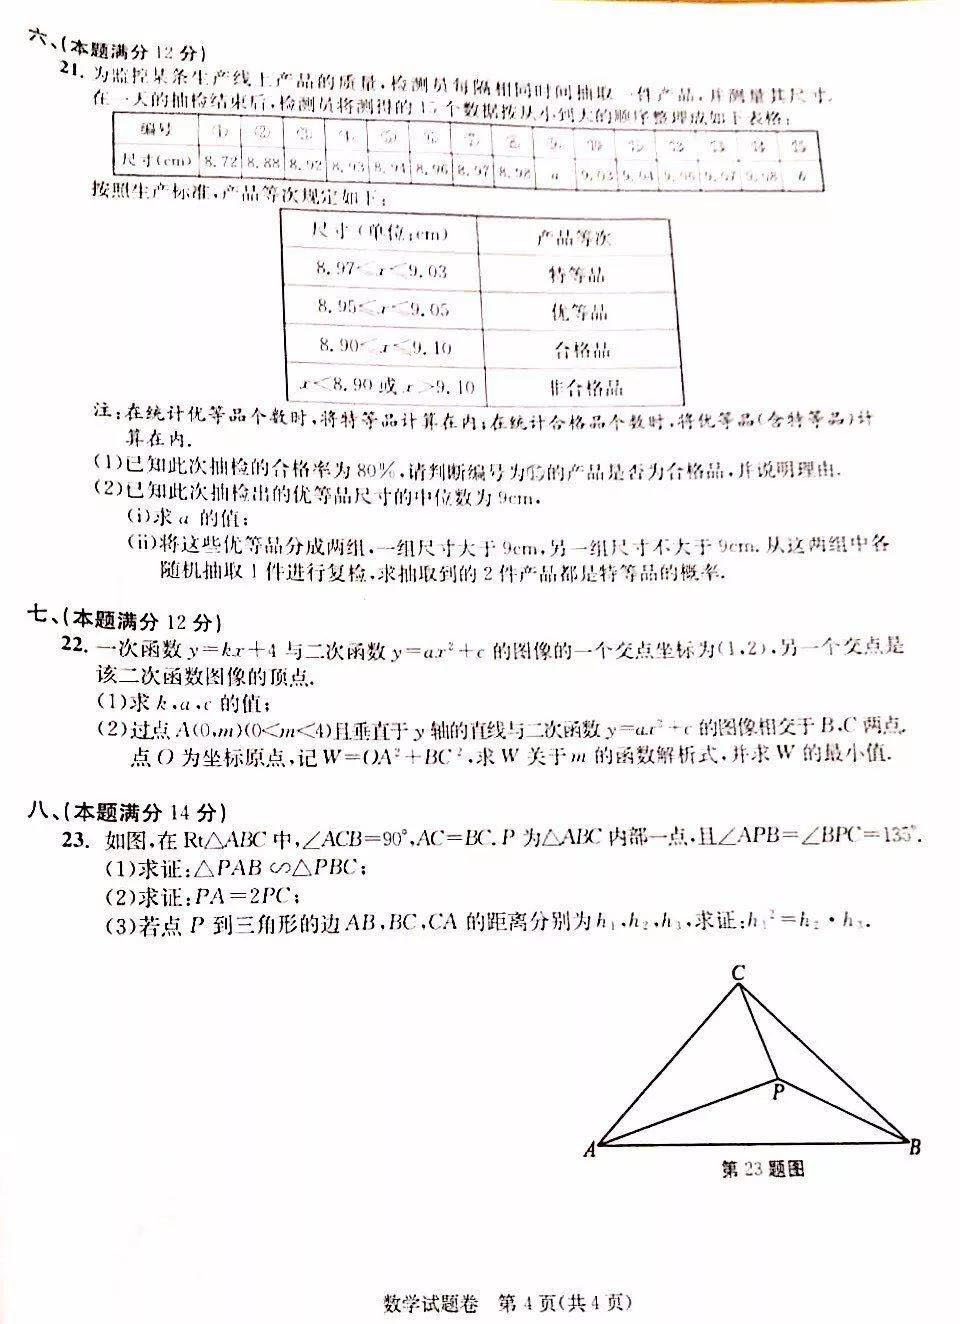 2019年安徽六安中考数学真题及答案【图片版】4.jpg